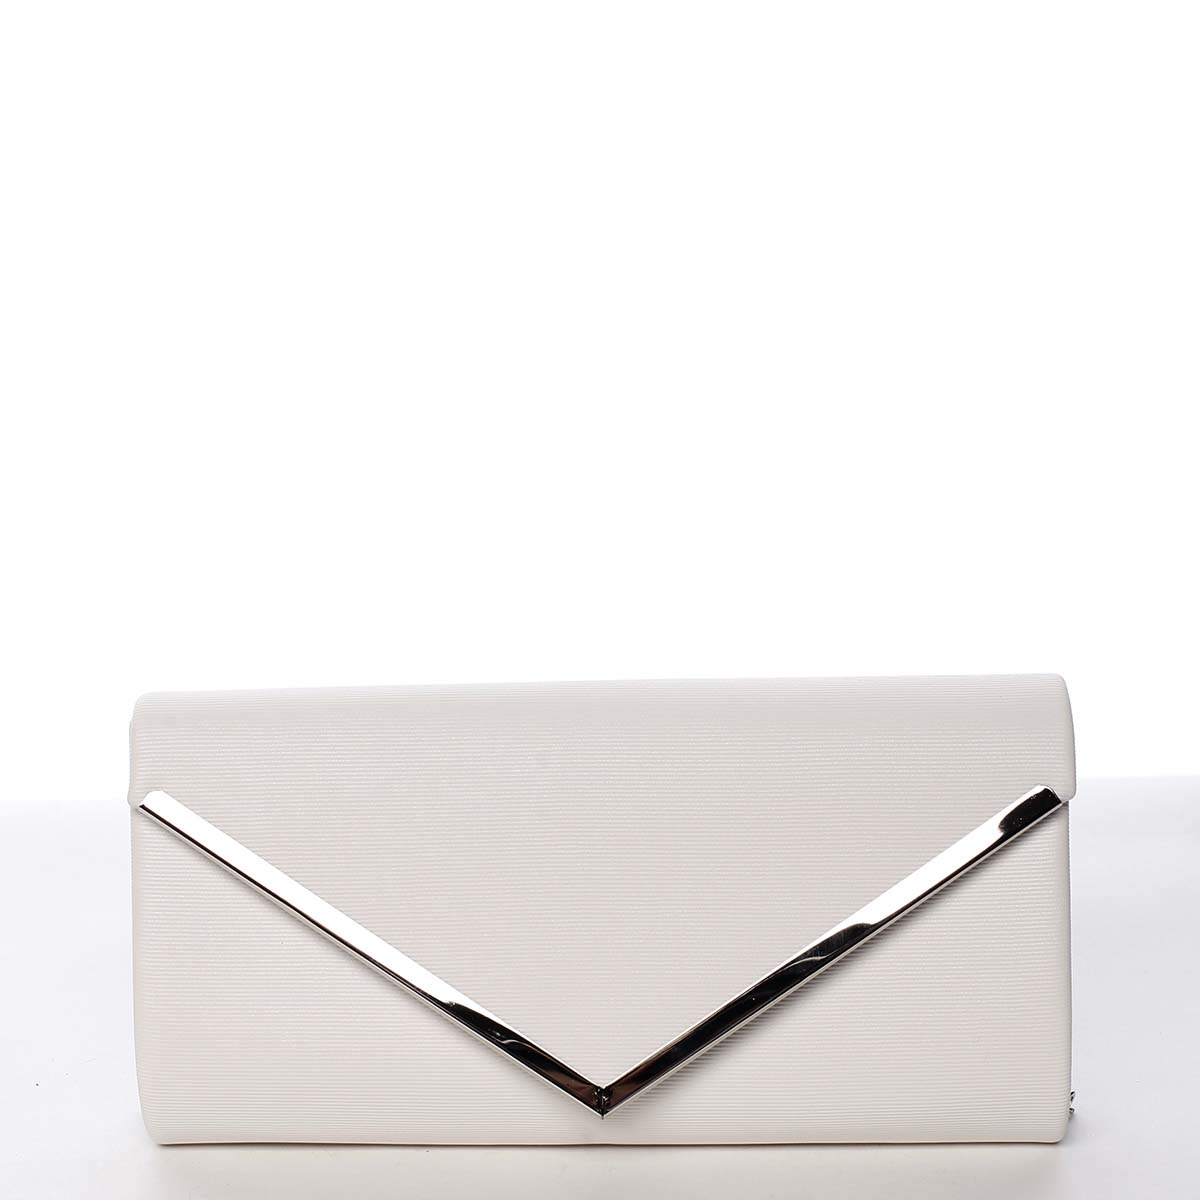 Atraktívna dámska listová kabelka biela - Michelle Moon Brush